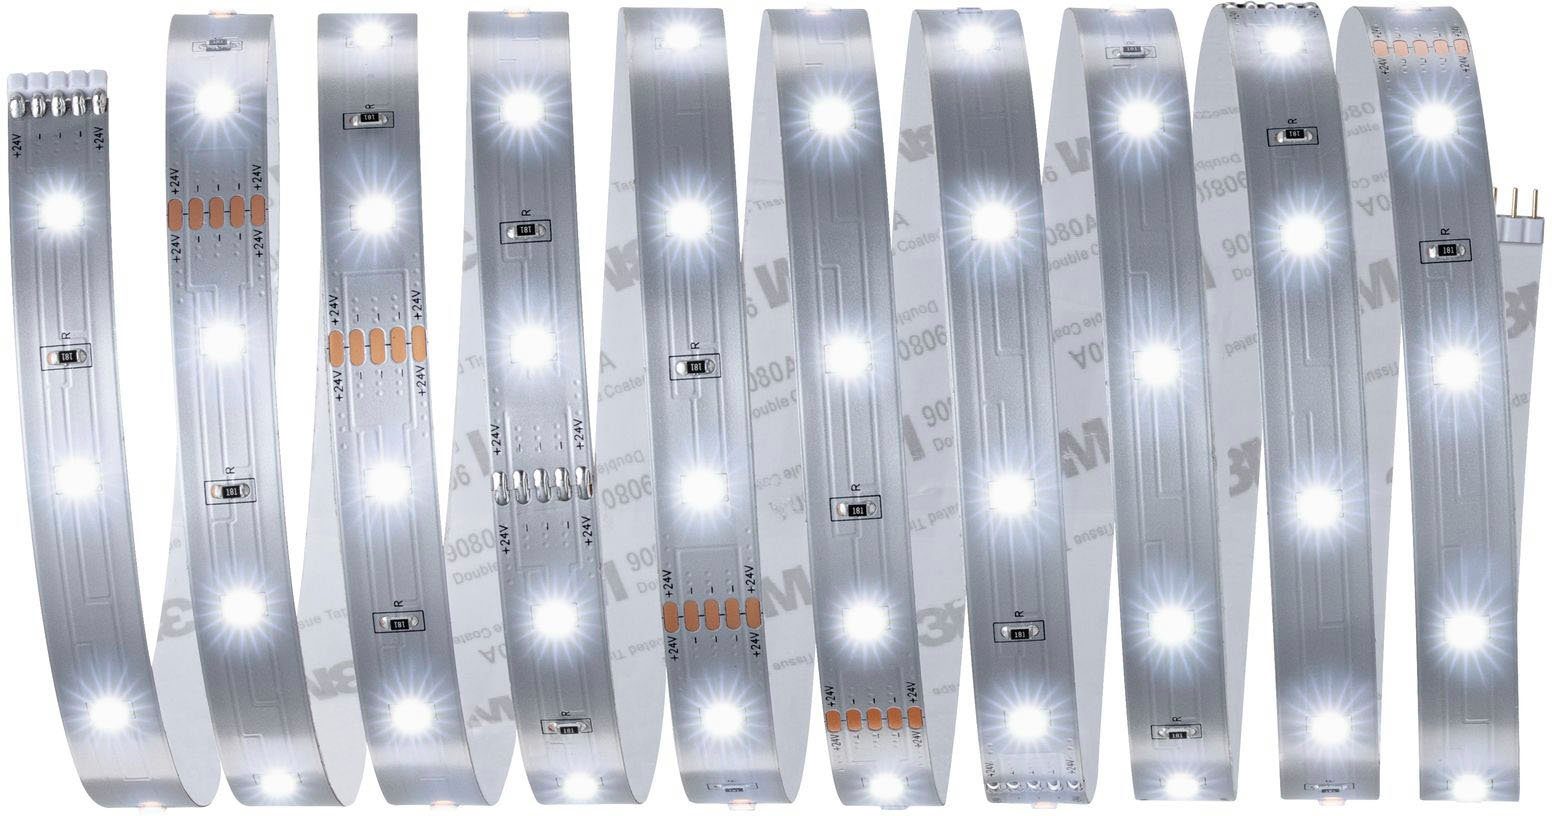 250 Tageslichtweiß, Stripe Paulmann MaxLED LED unbeschichtet 3m Basisset 1-flammig